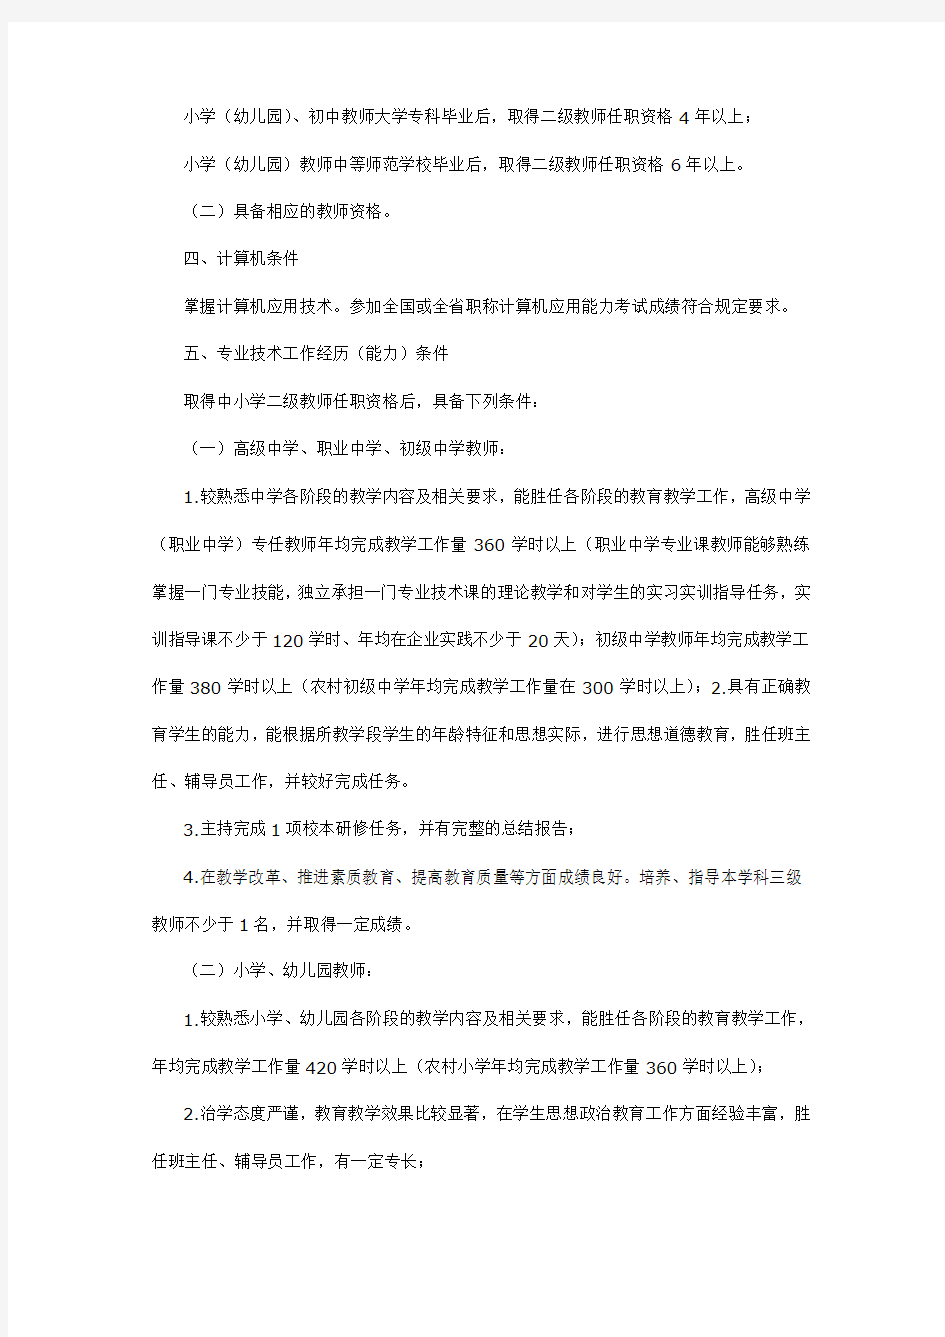 河北省中小学教师系列一年级教师任职资格申报评审条件